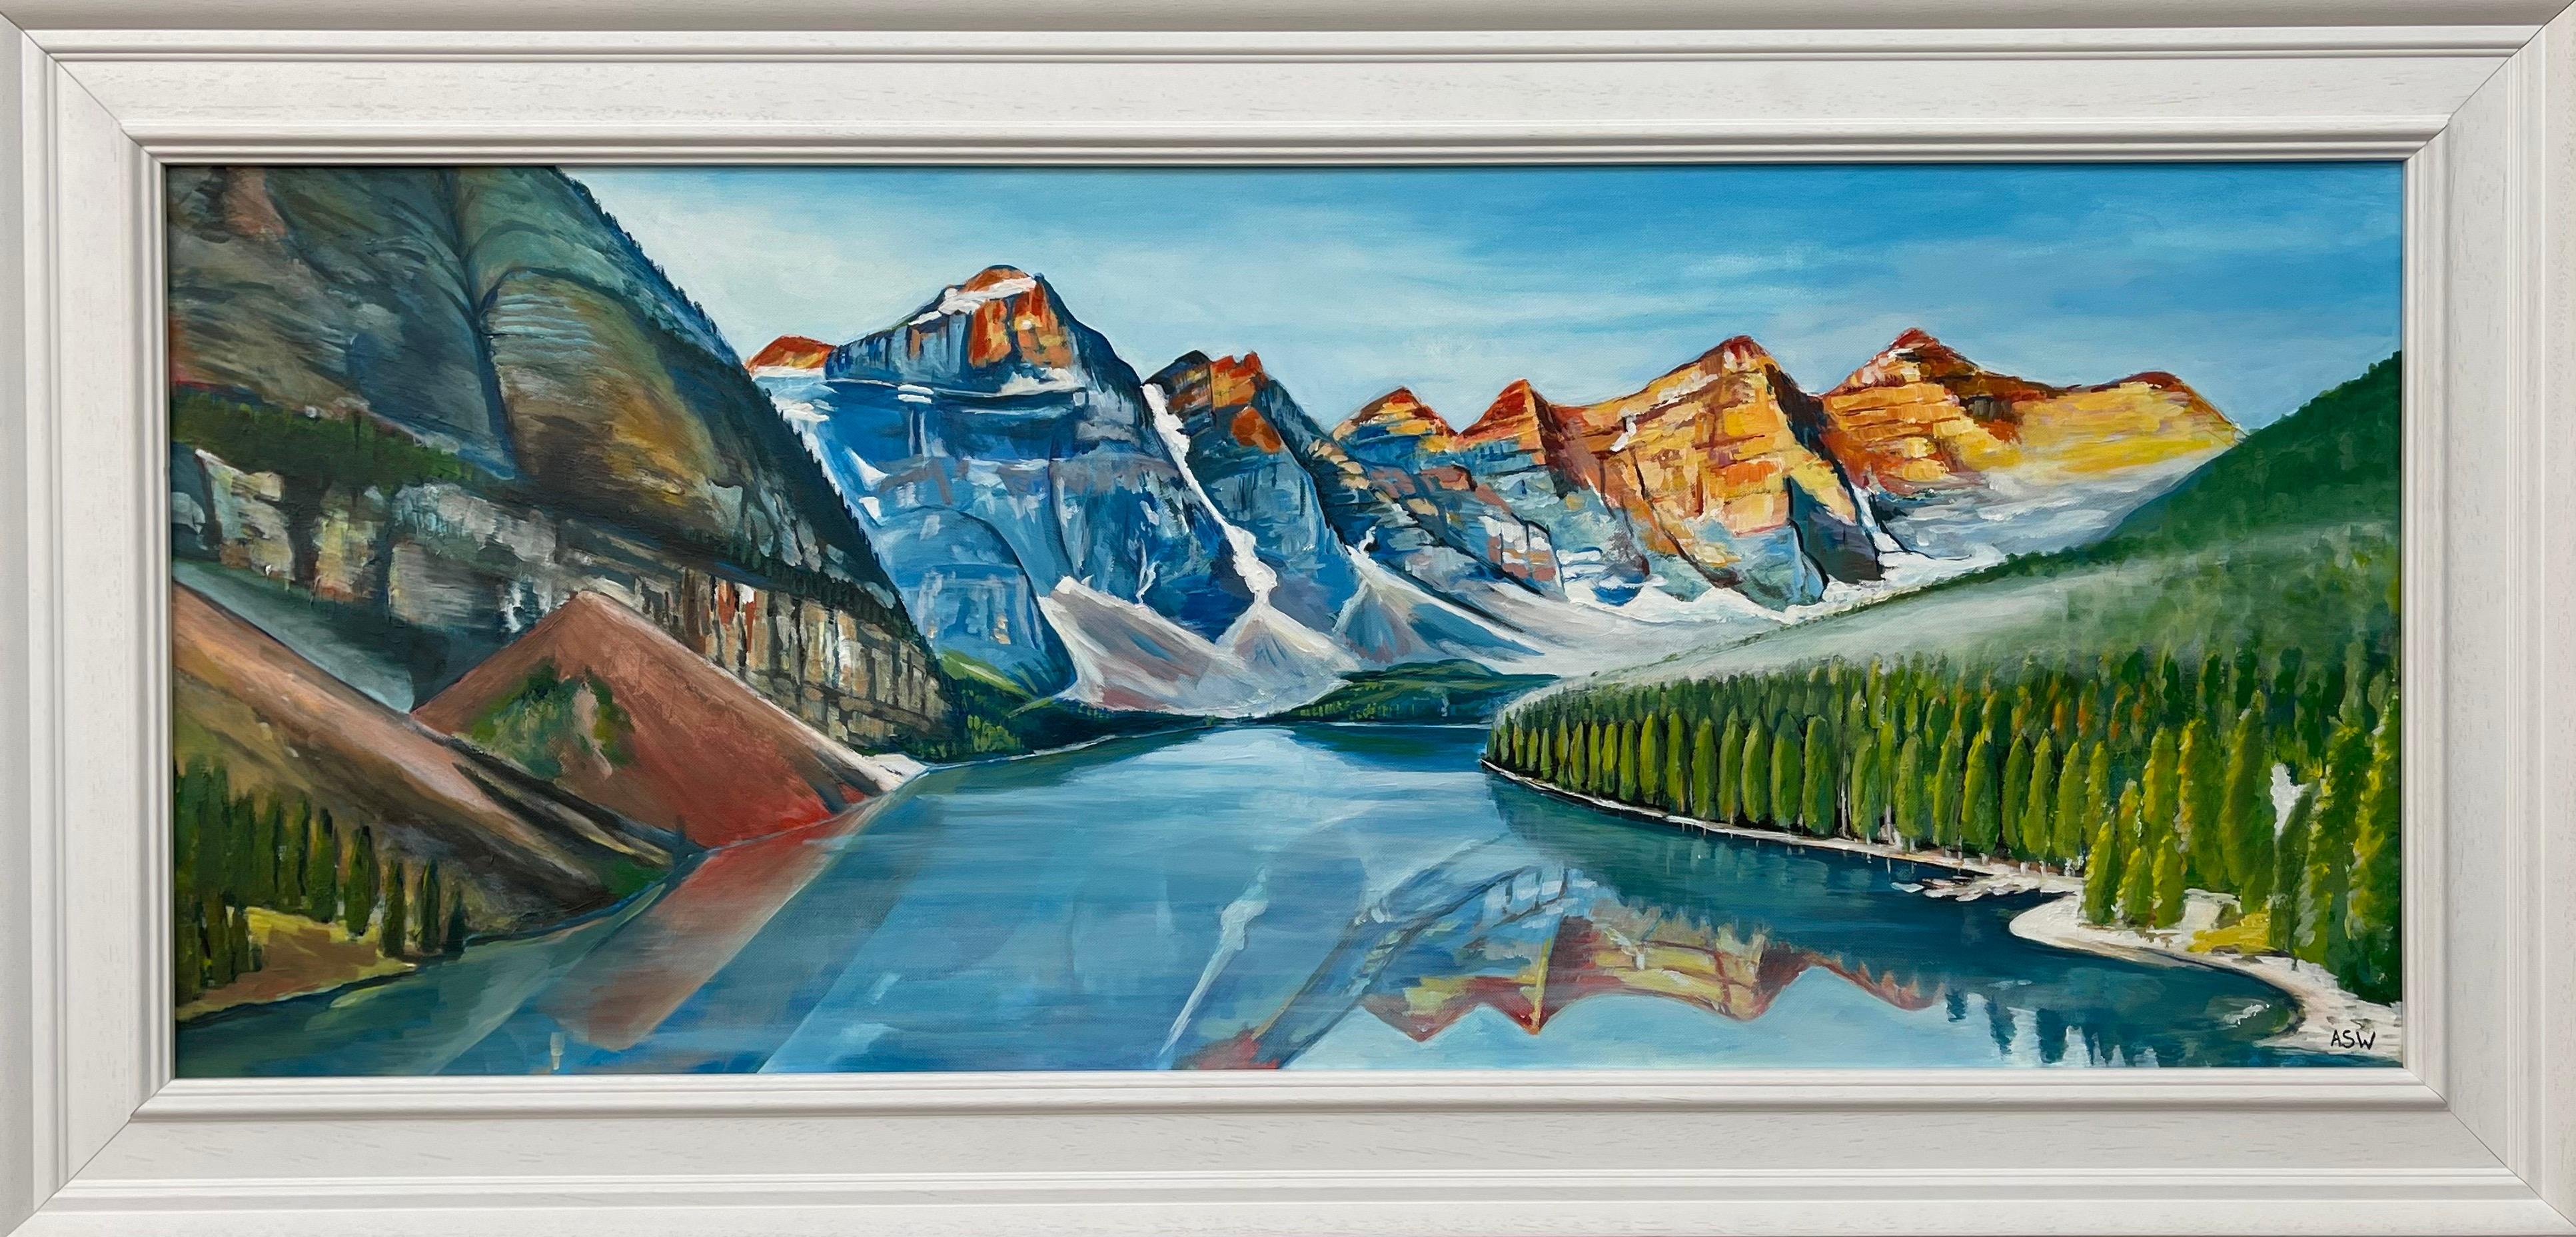 Modernes Landschaftsgemälde des Alberta-Sees in Kanada des zeitgenössischen Künstlers